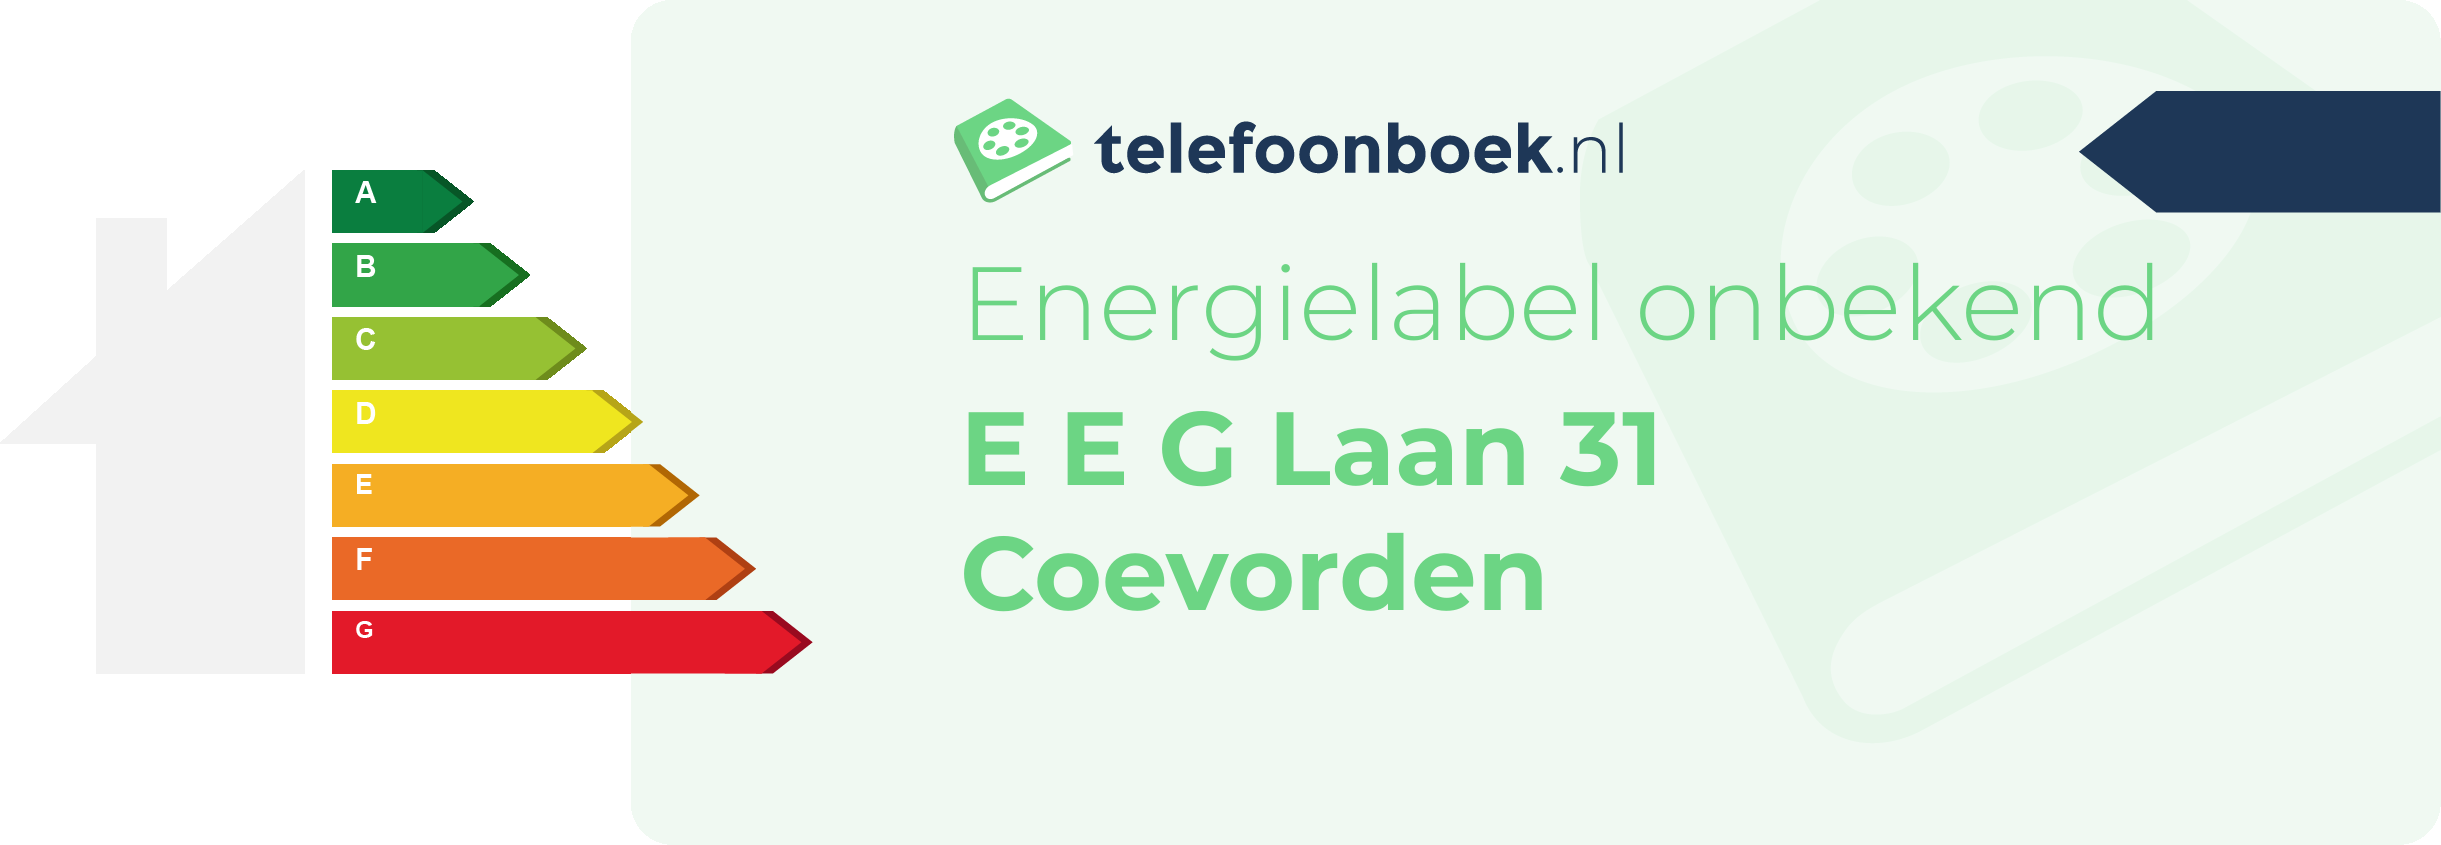 Energielabel E E G Laan 31 Coevorden